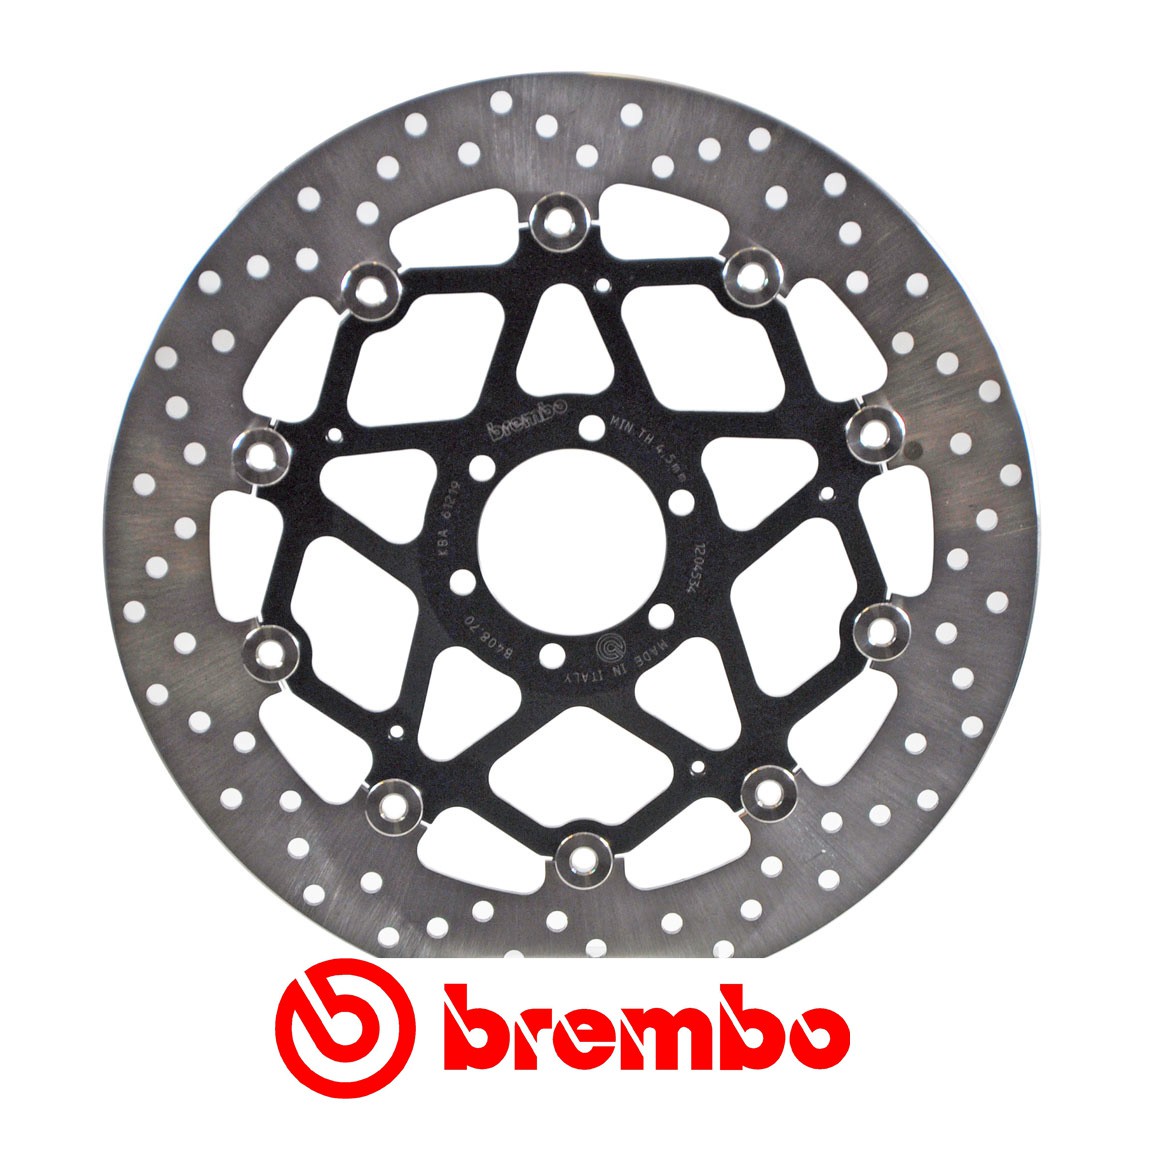 Disque de frein avant Brembo pour 600 SS (91-00) 750 SS (91-02)